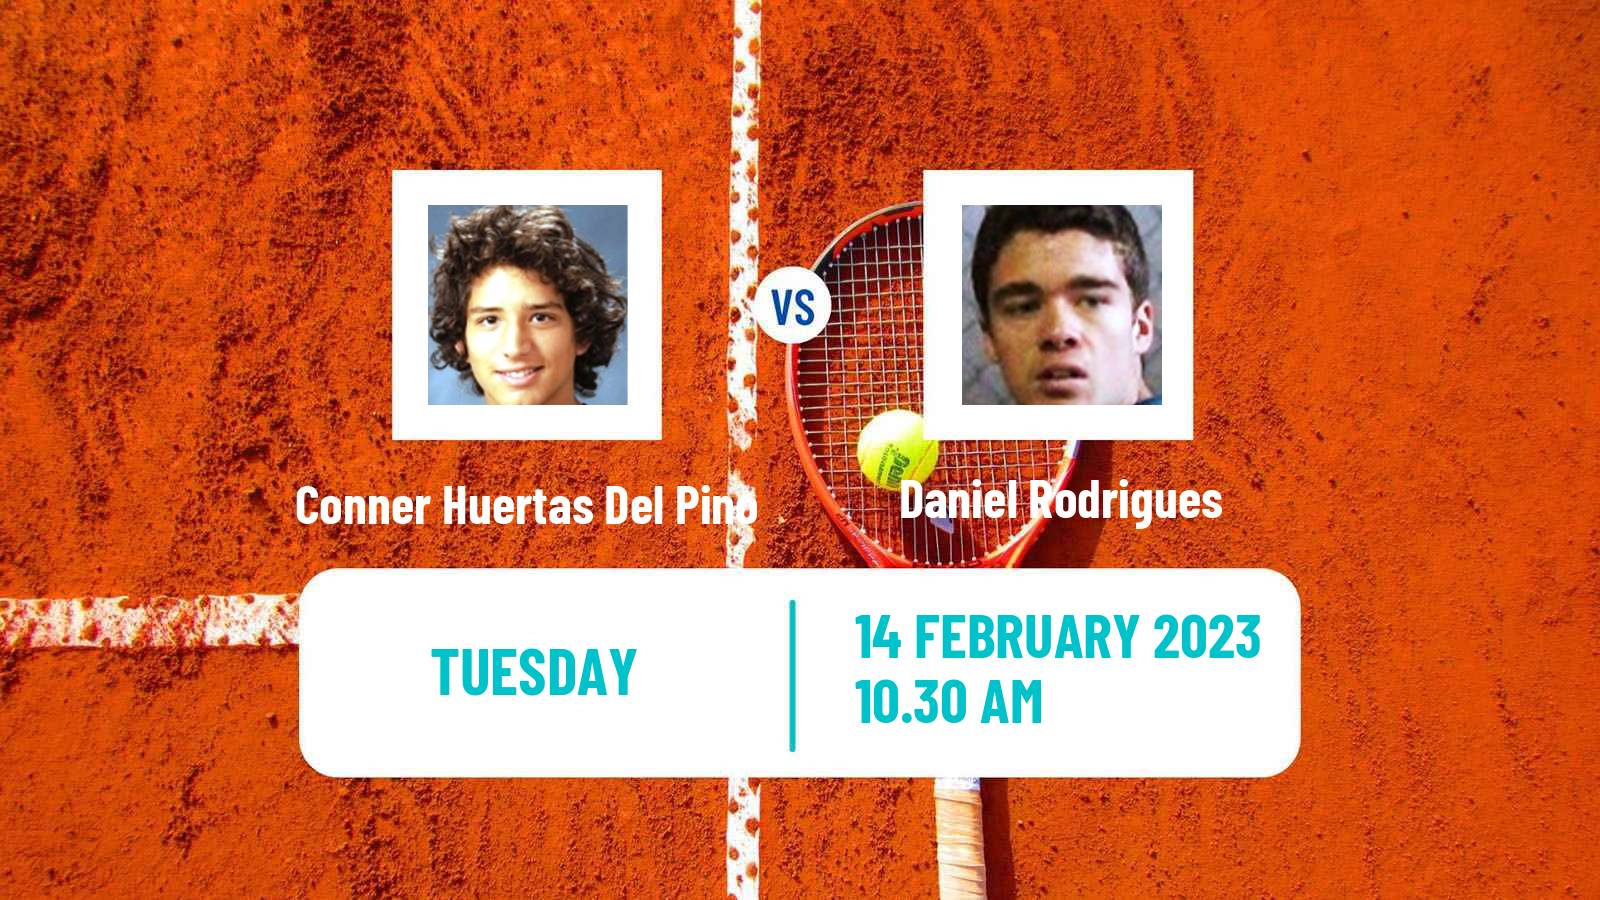 Tennis ITF Tournaments Conner Huertas Del Pino - Daniel Rodrigues